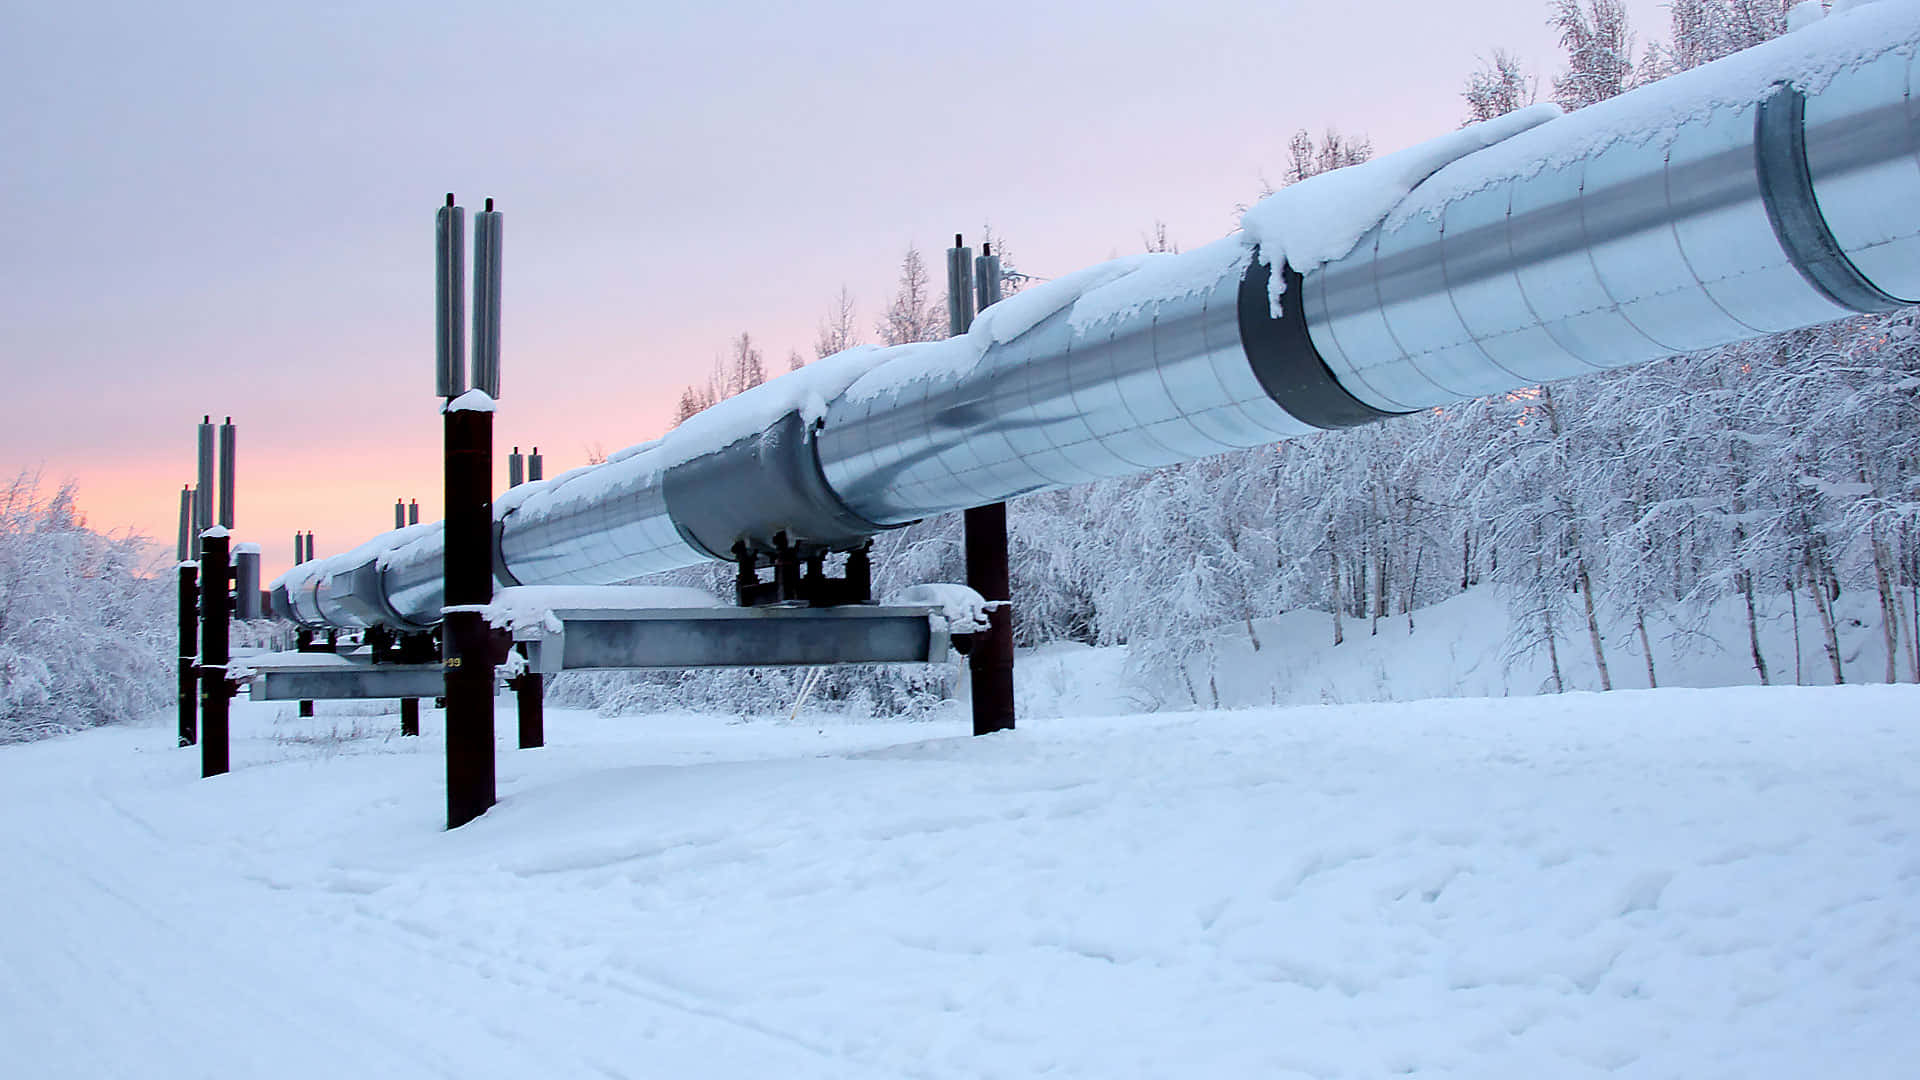 Einegroße Pipeline Ist Mit Schnee Bedeckt.